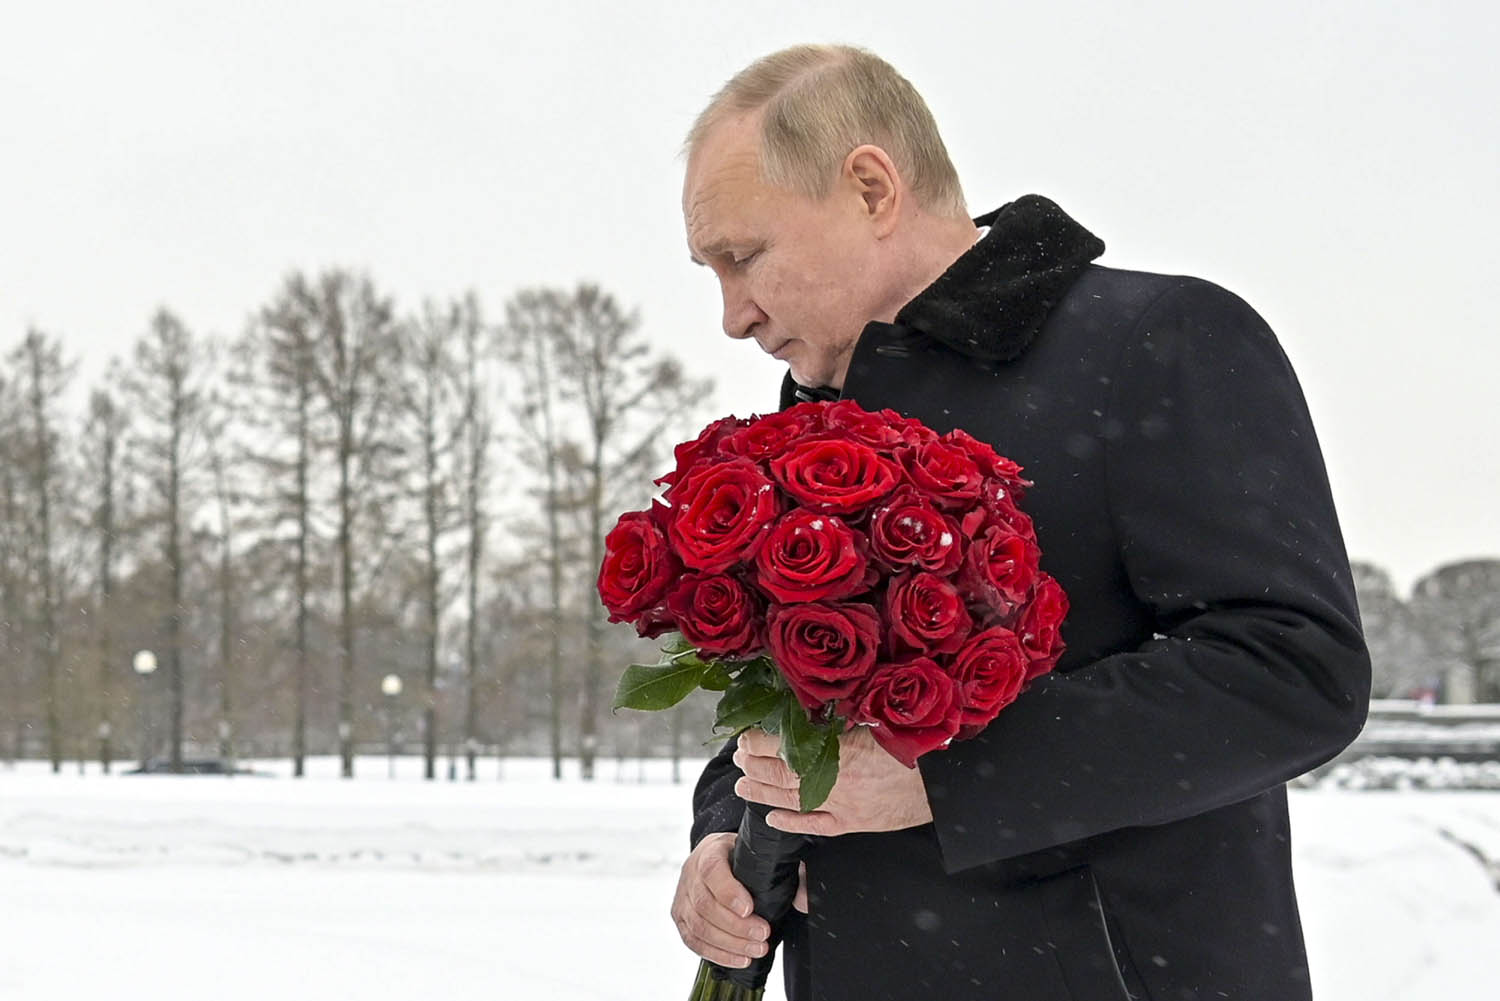 الرئيس الروسي فلاديمير بوتين يضع باقة زهور على شواهد قبور ضحايا معارك لينينغراد في الحرب العالمية الثانية